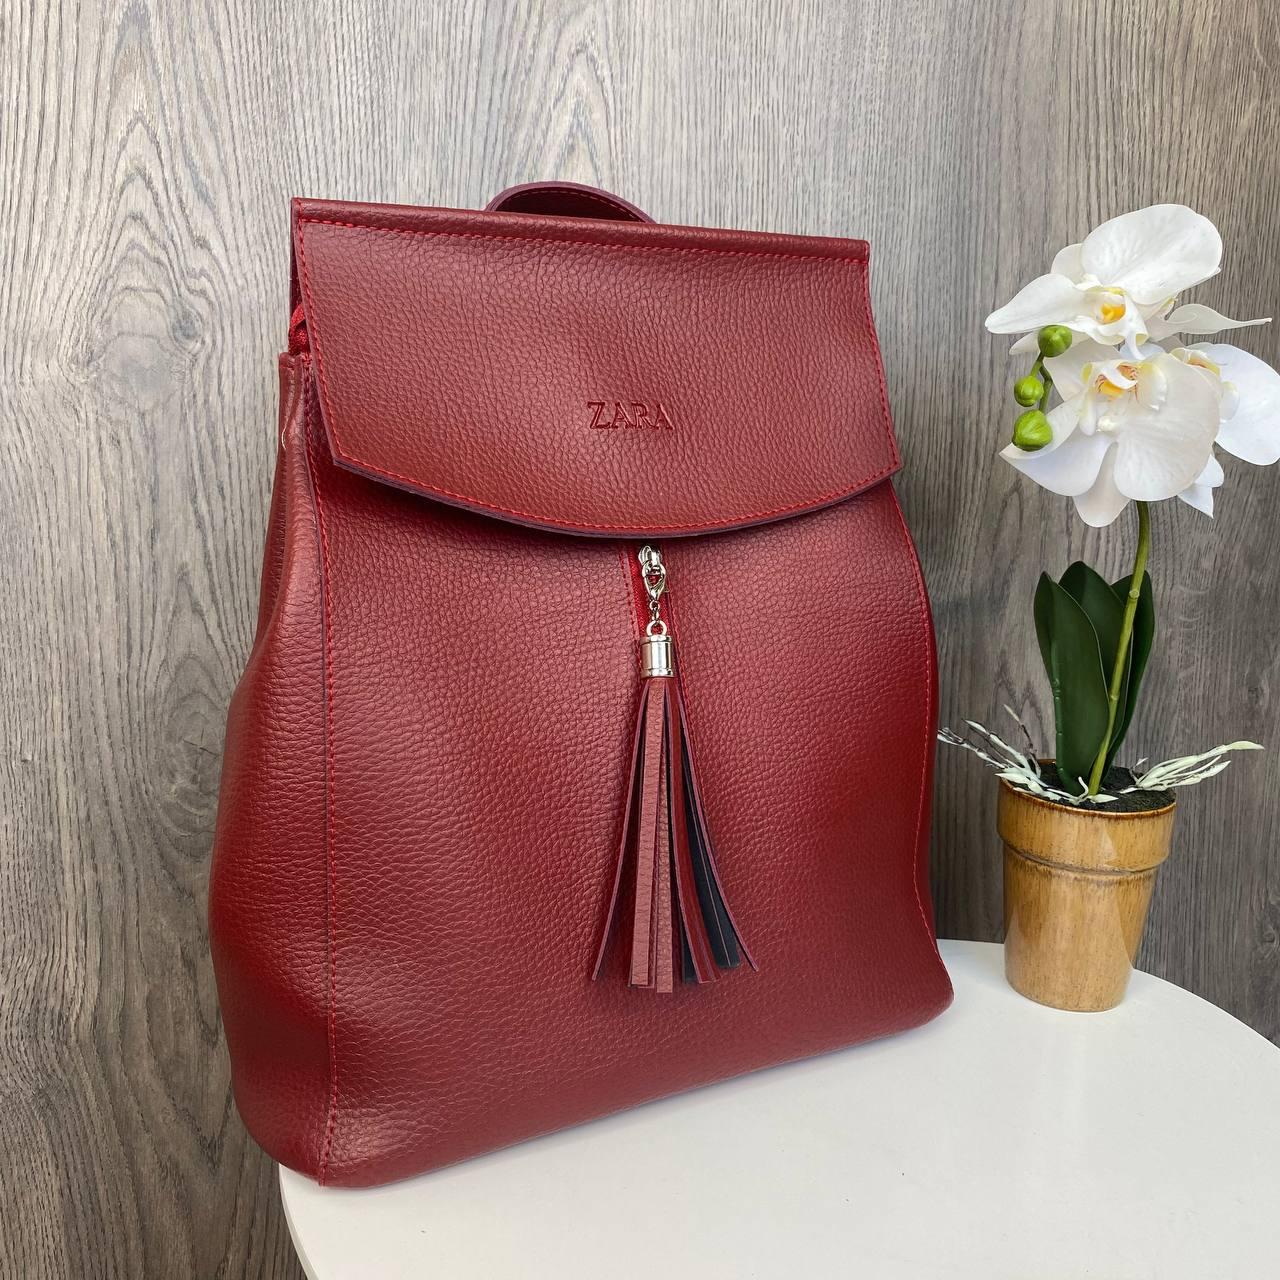 Жіночий міський рюкзак сумка 2 в 1 Zara Червоний